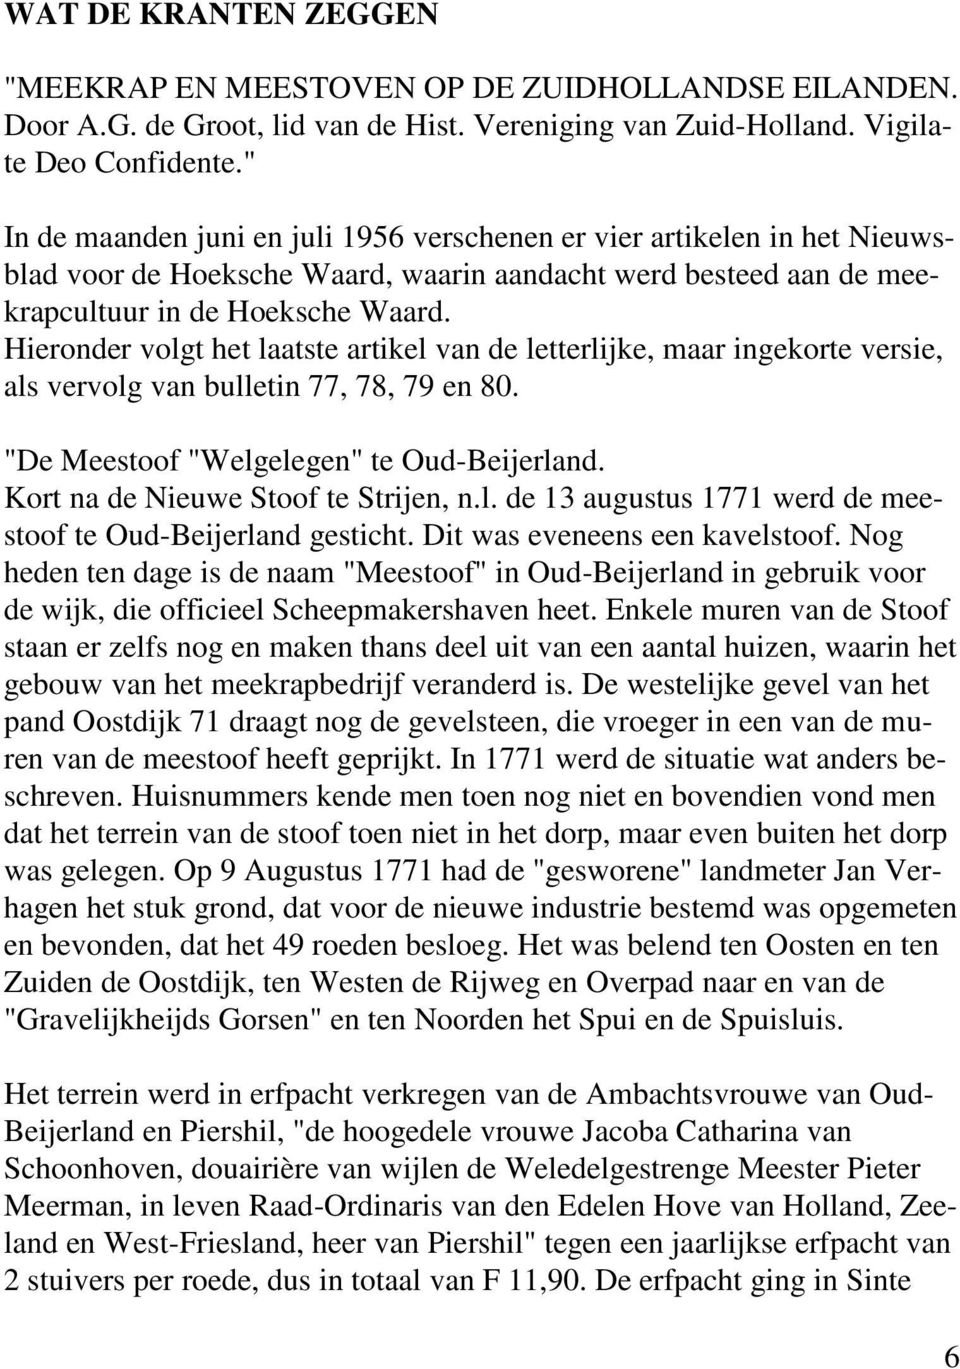 Hieronder volgt het laatste artikel van de letterlijke, maar ingekorte versie, als vervolg van bulletin 77, 78, 79 en 80. "De Meestoof "Welgelegen" te Oud-Beijerland.